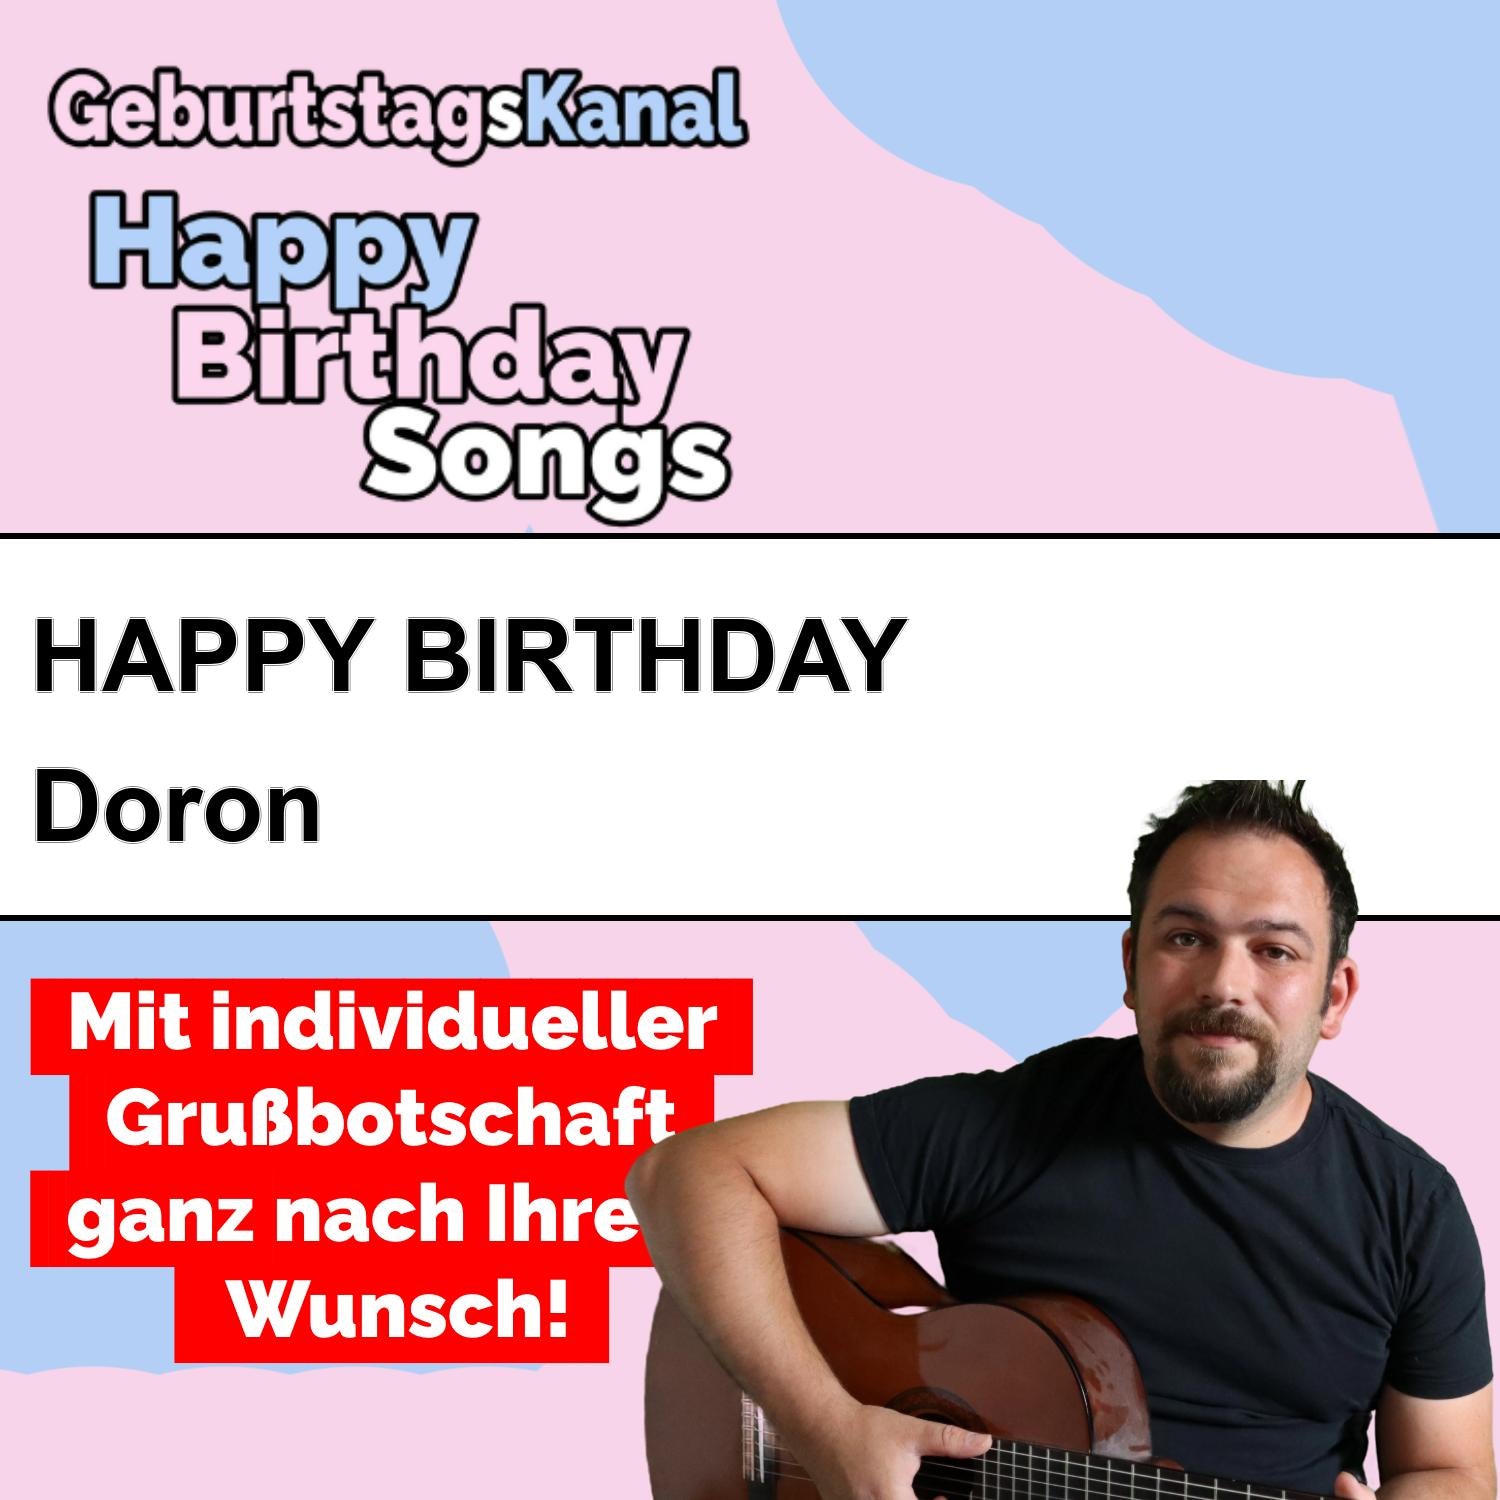 Produktbild Happy Birthday to you Doron mit Wunschgrußbotschaft